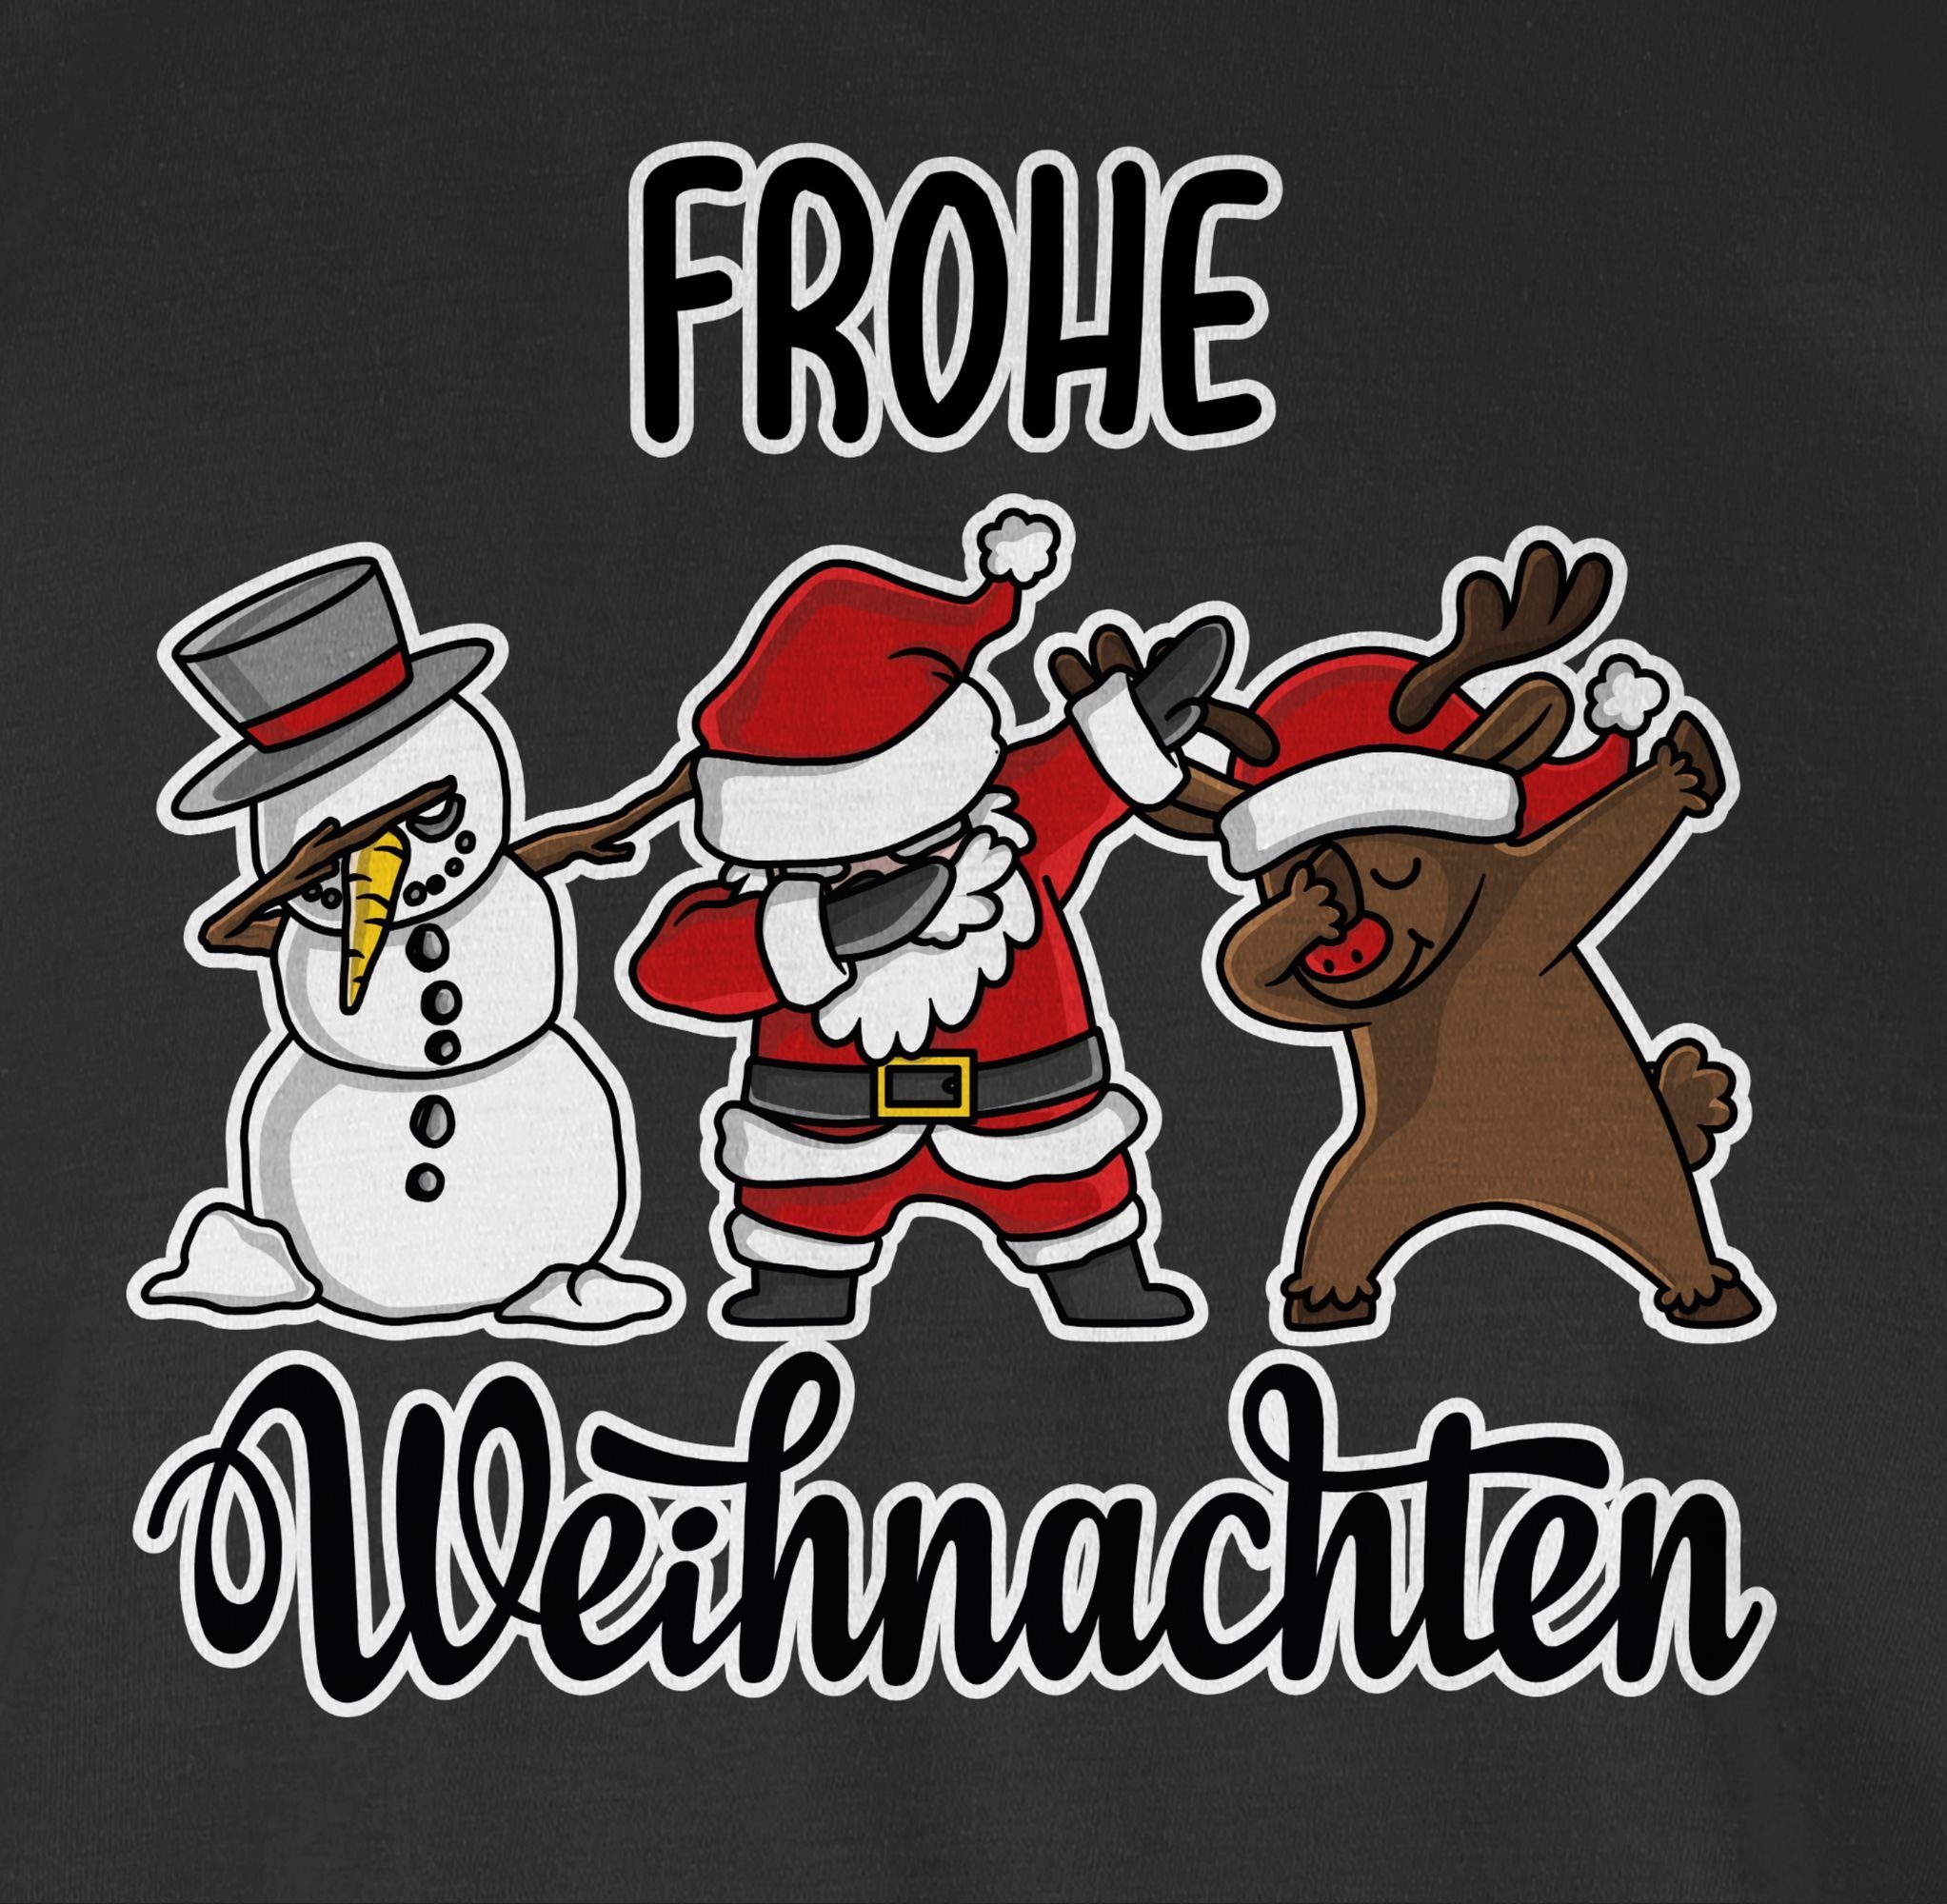 Shirtracer Dabbing 1 Frohe Rundhalsshirt Weihachten Schwarz Weihnachten Kleidung